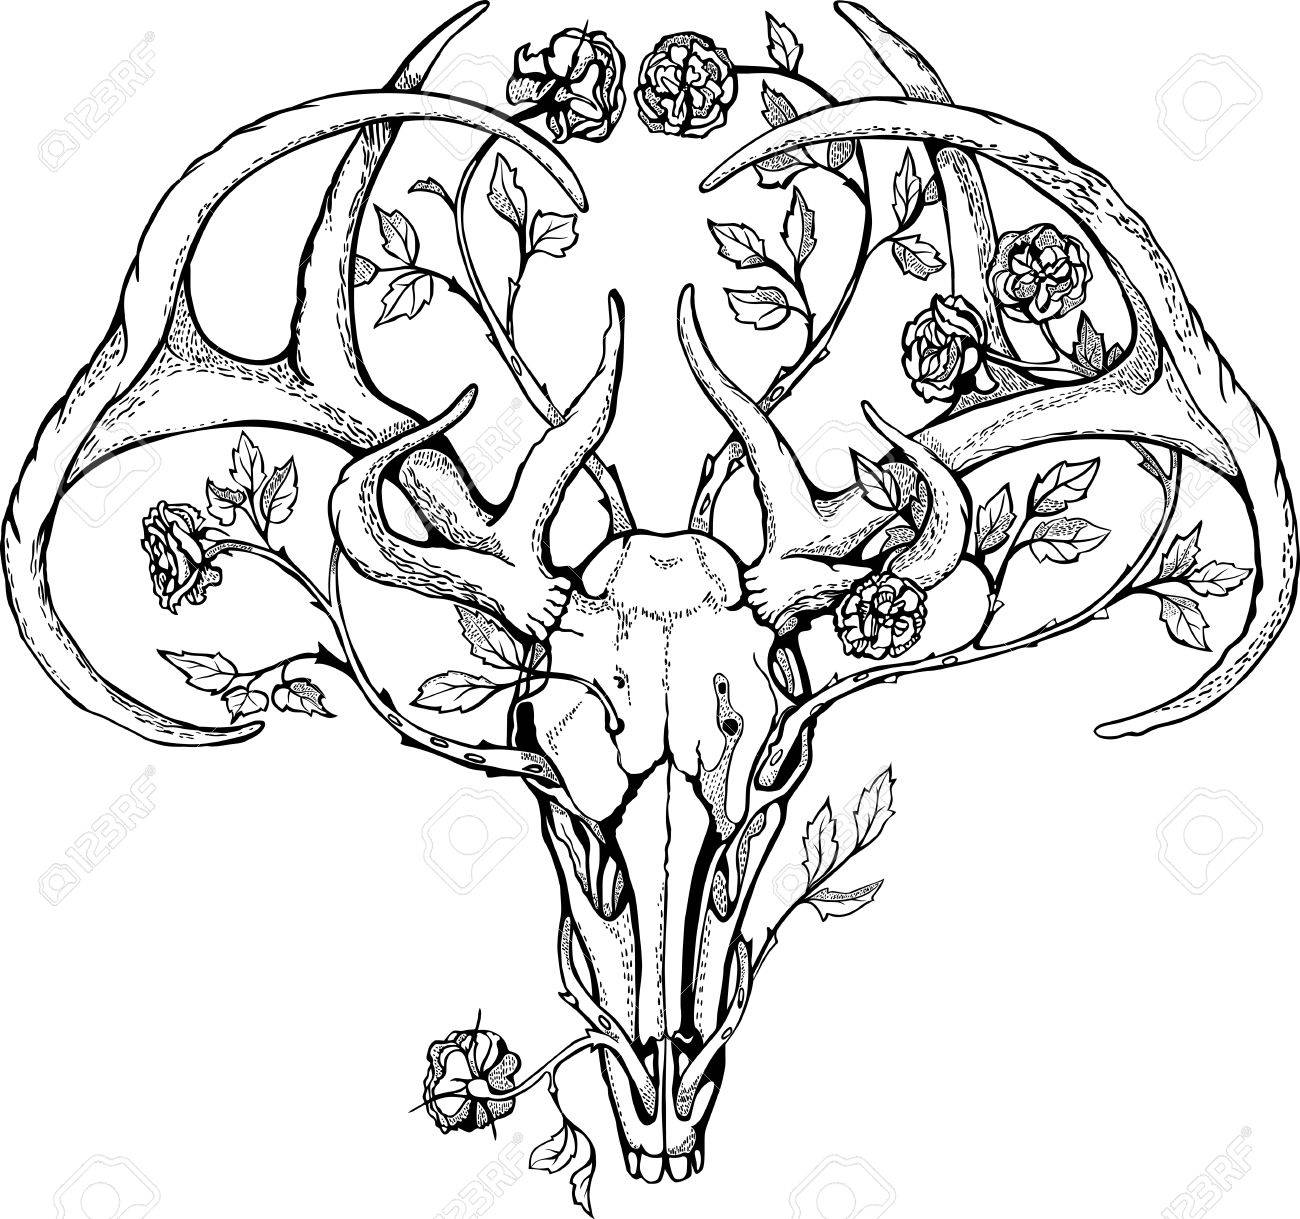 Стилизованный череп оленя